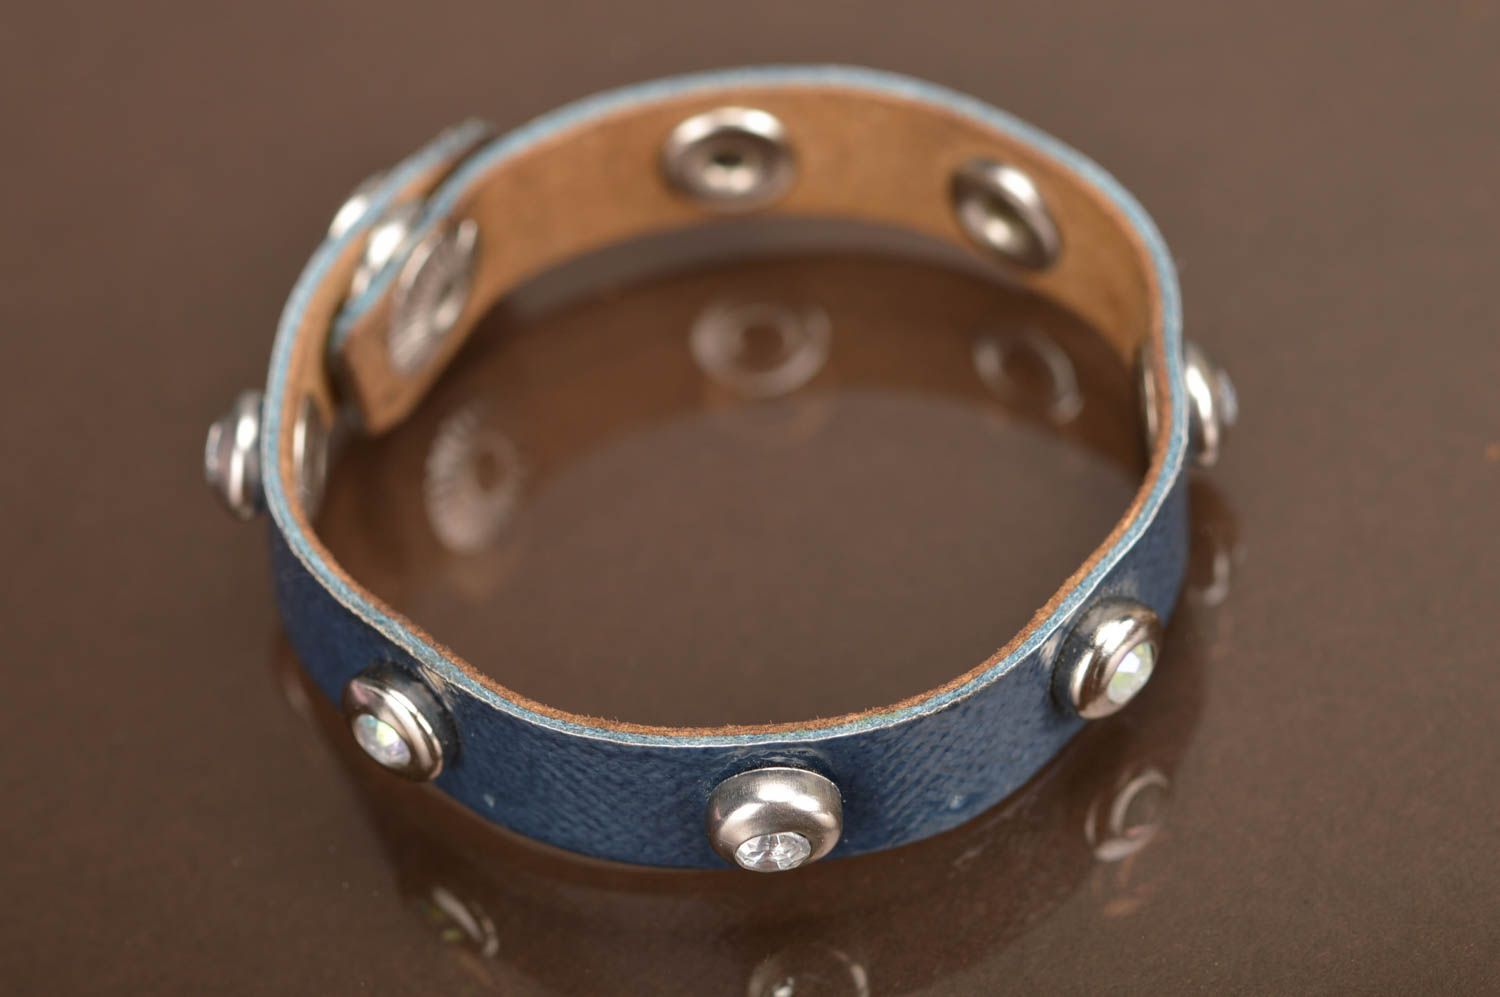 Blaues Armband aus Leder mit Nieten schön dünn Handarbeit stilvoll modisch toll foto 5